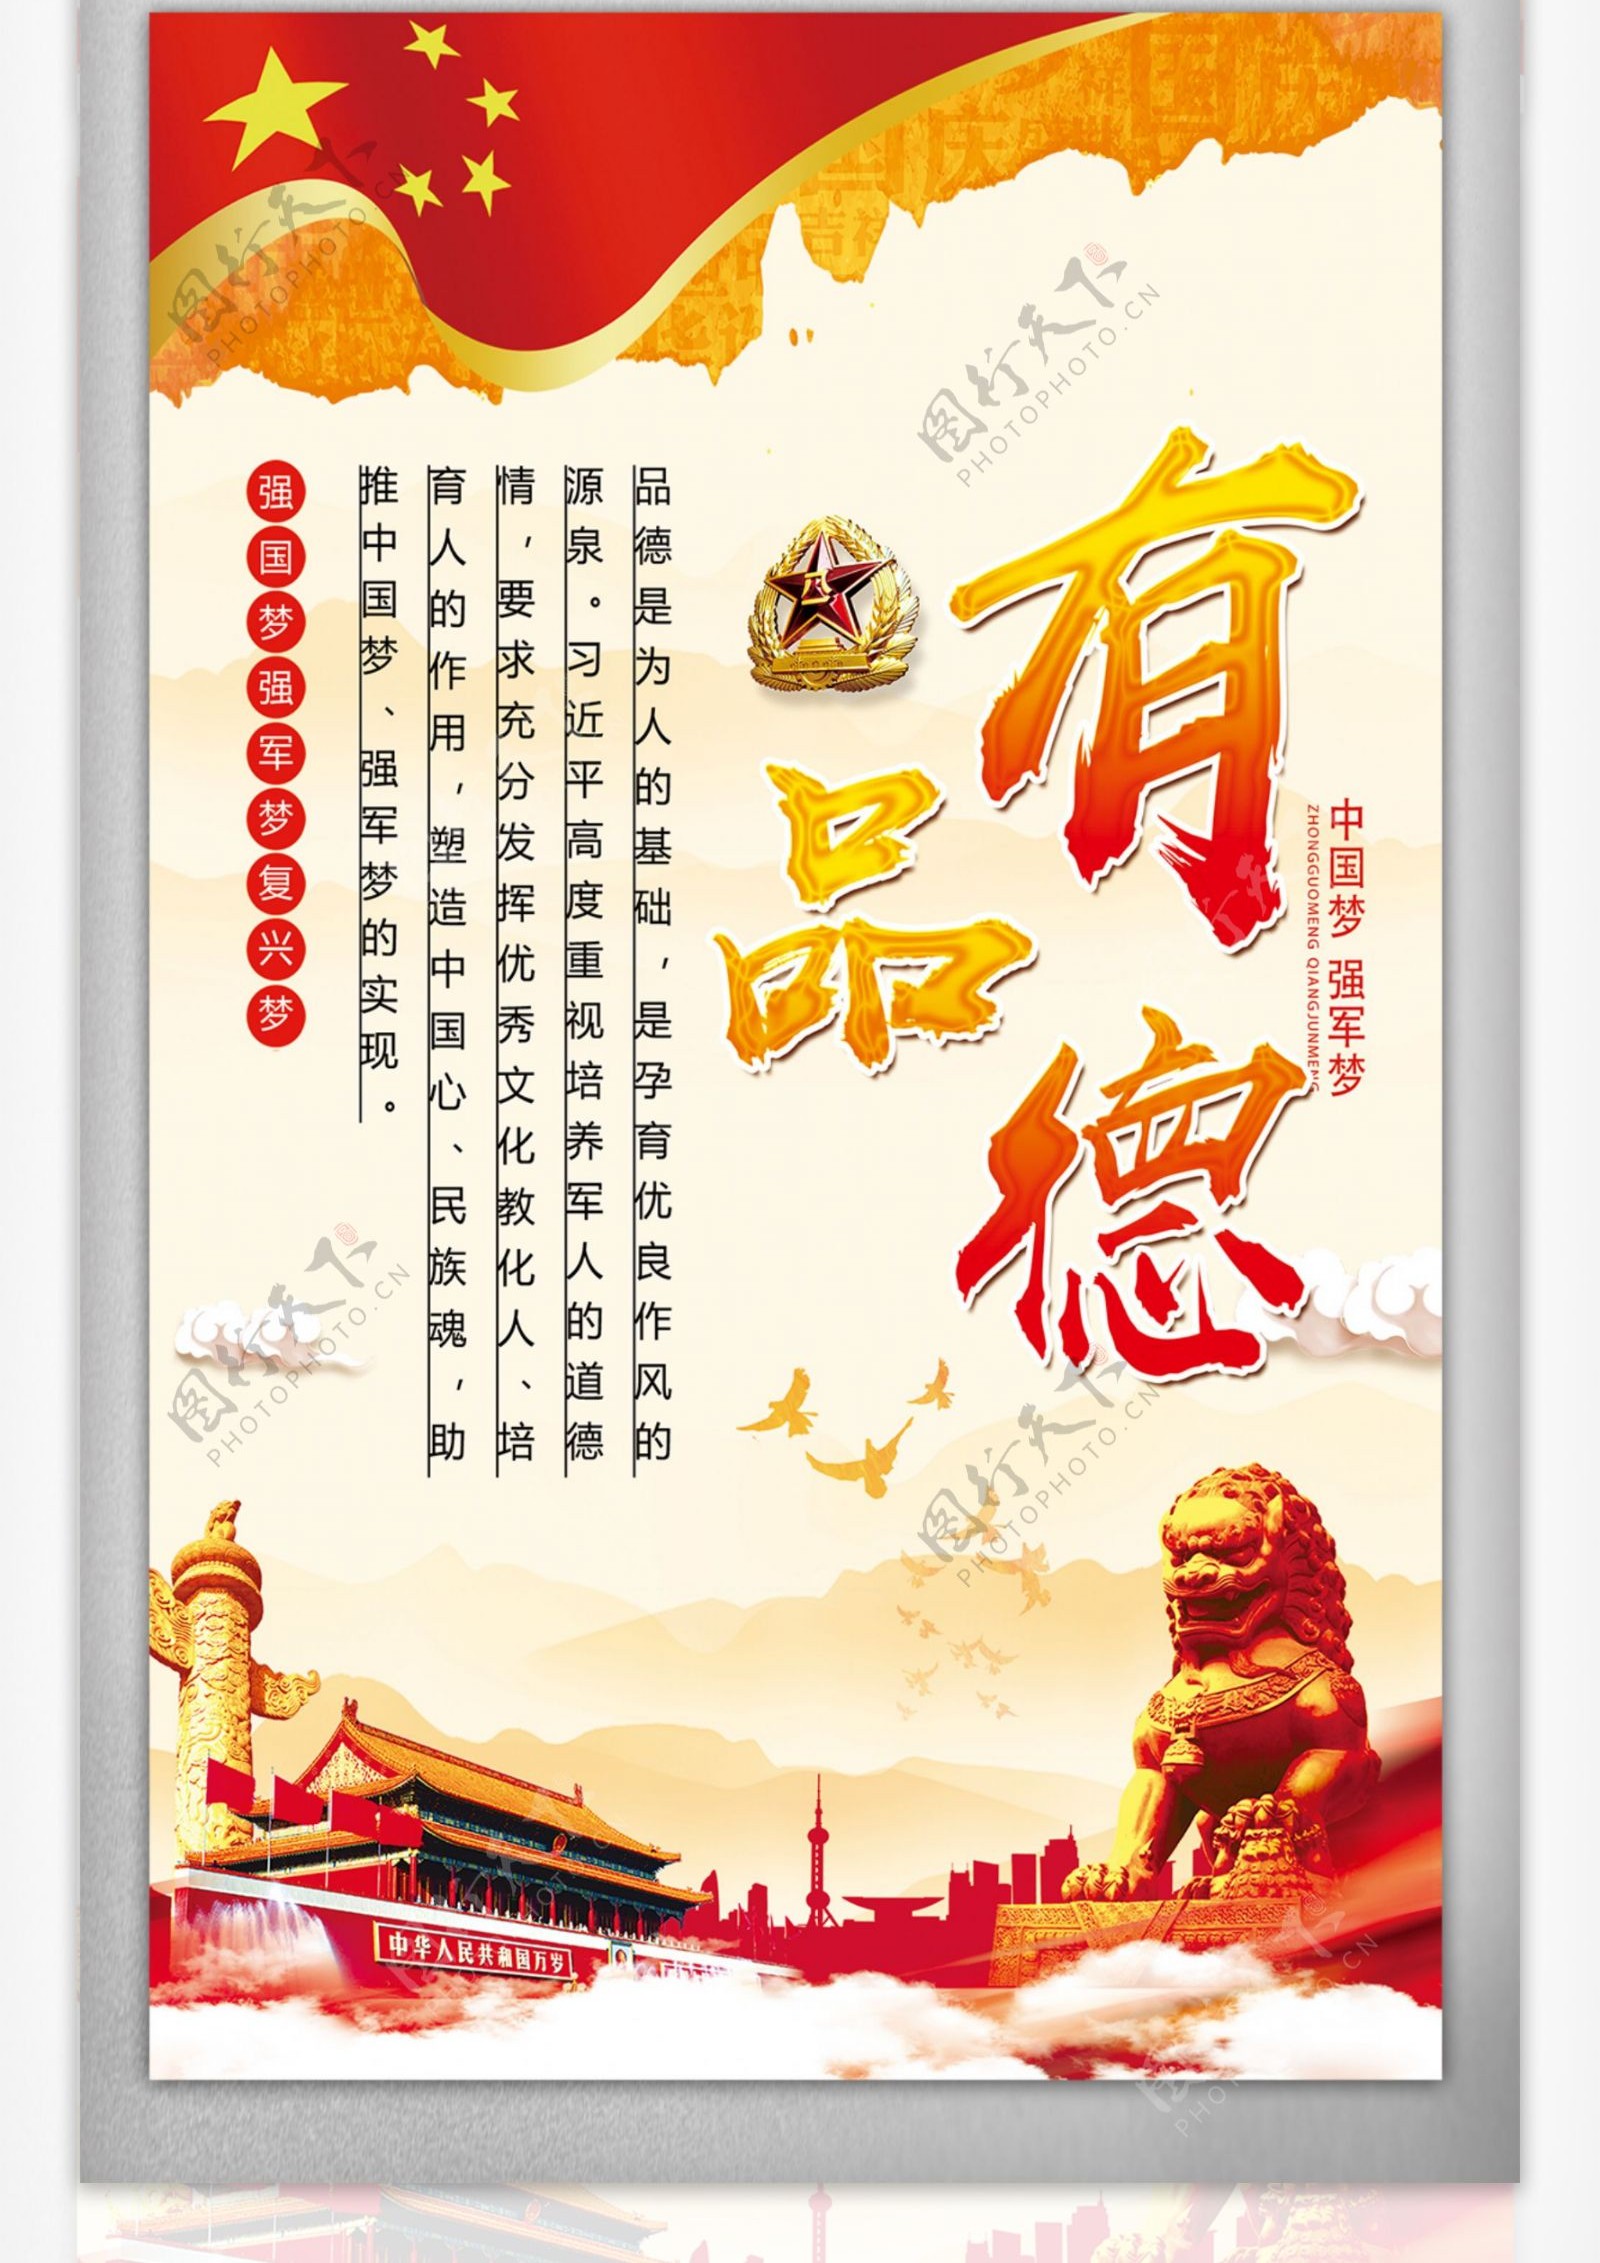 中国风水彩四有军人部队展板设计挂画